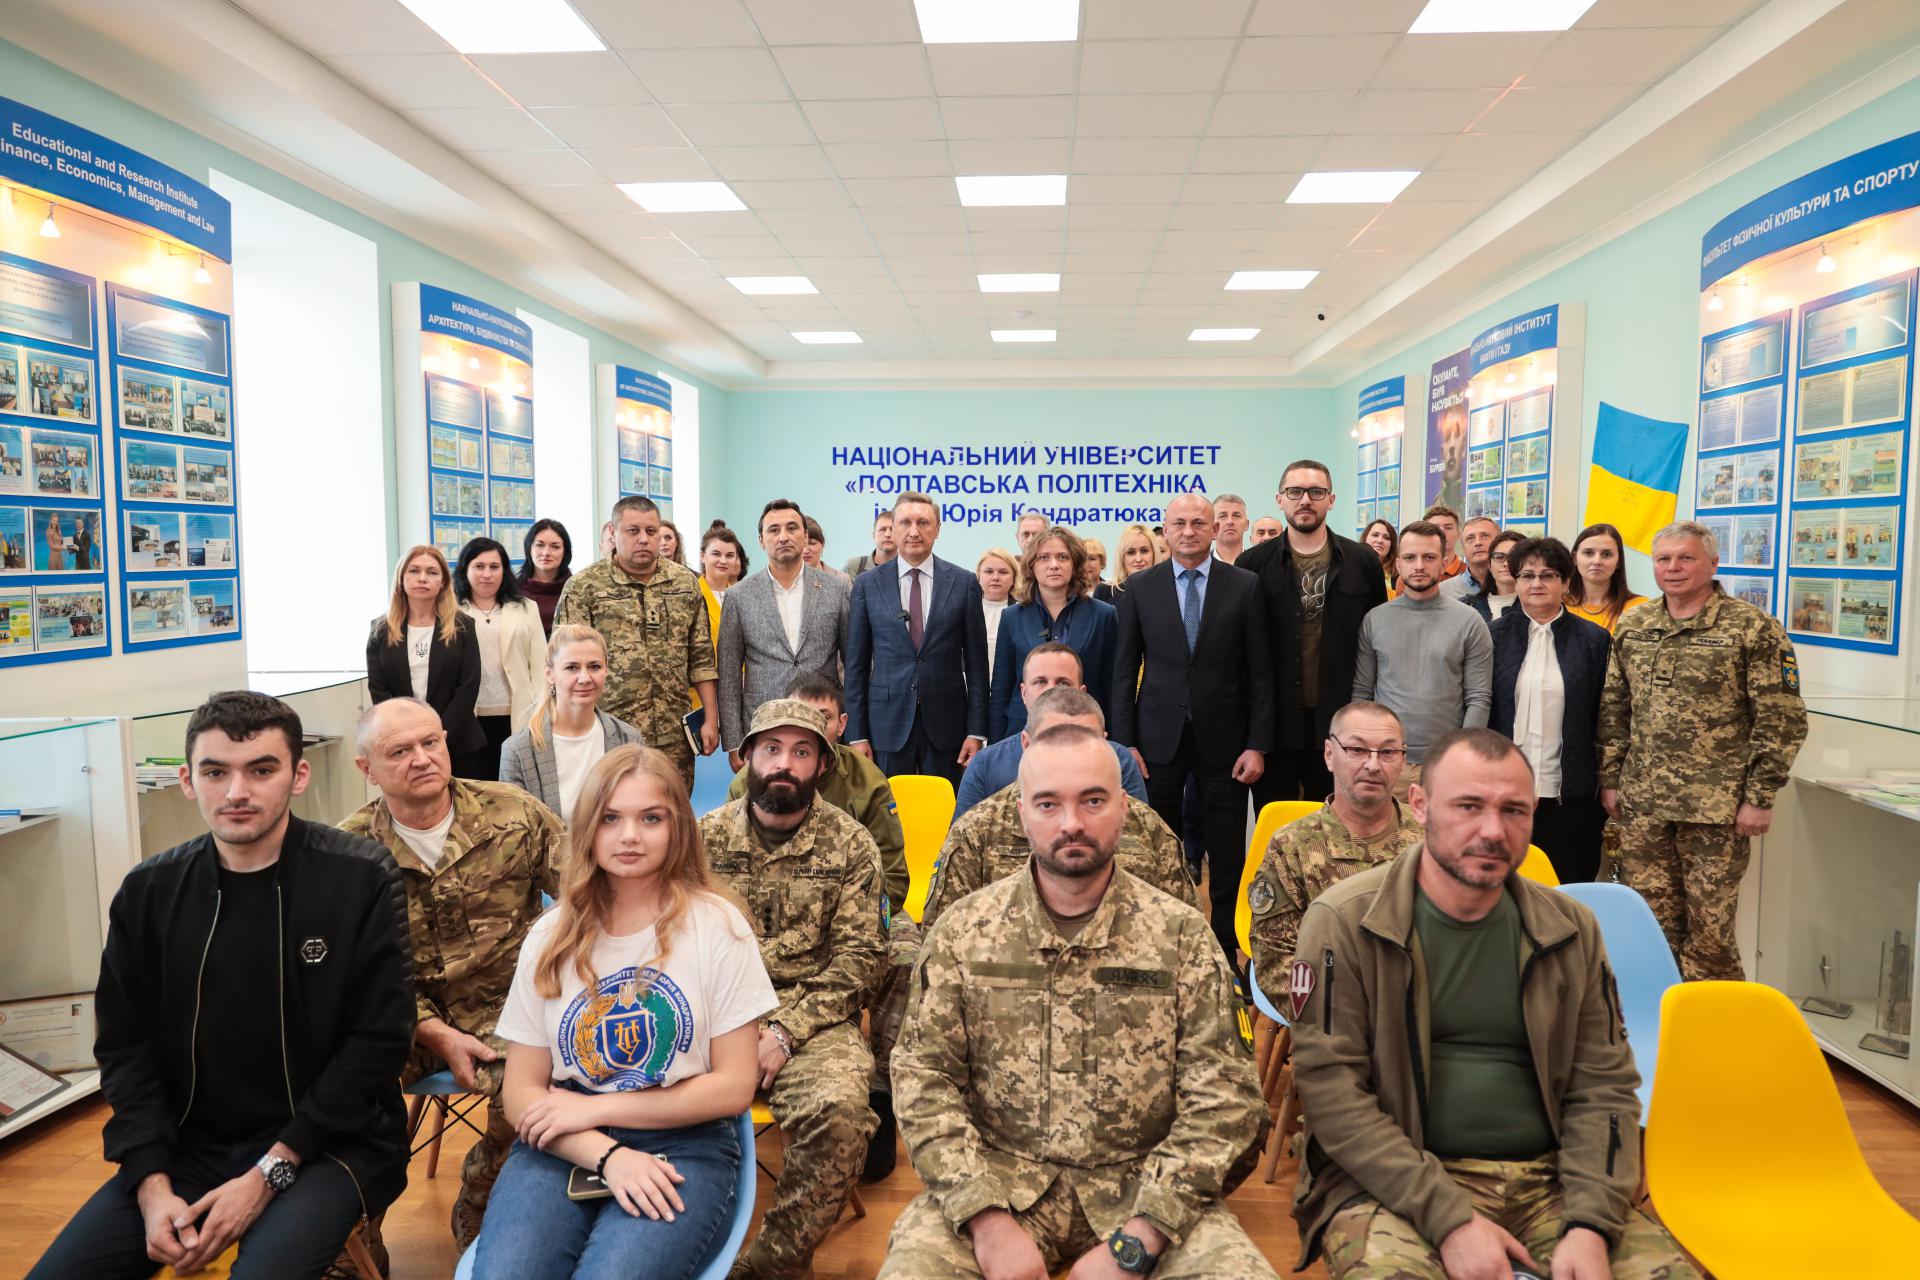 Veterans Development Center is opened at the Poltava Polytechnic